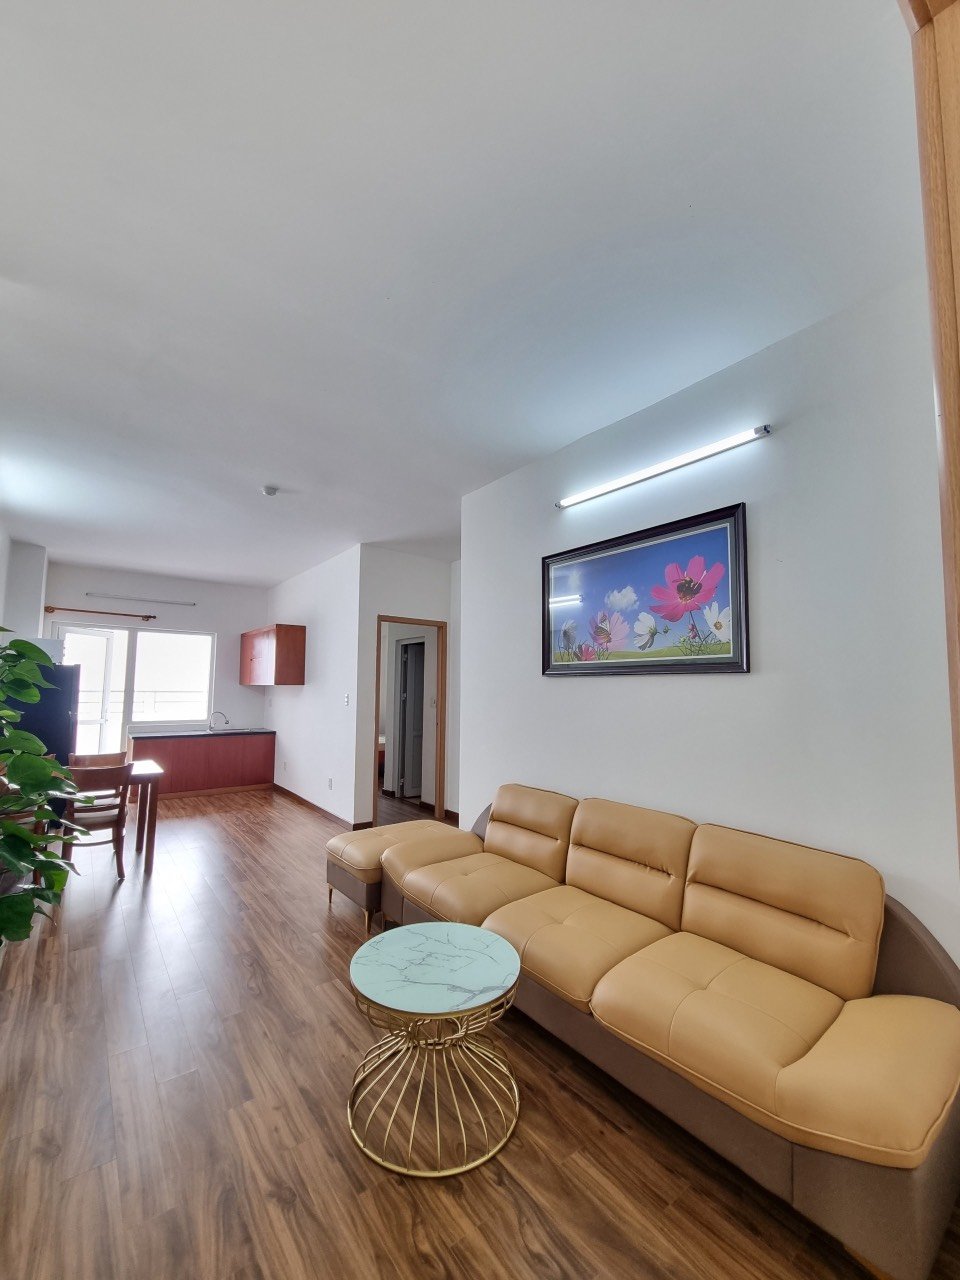 Bán căn hộ biển Mường Thanh OC2A - 2 phòng ngủ - Full nội thất - Giá tốt nhất thị trường 3